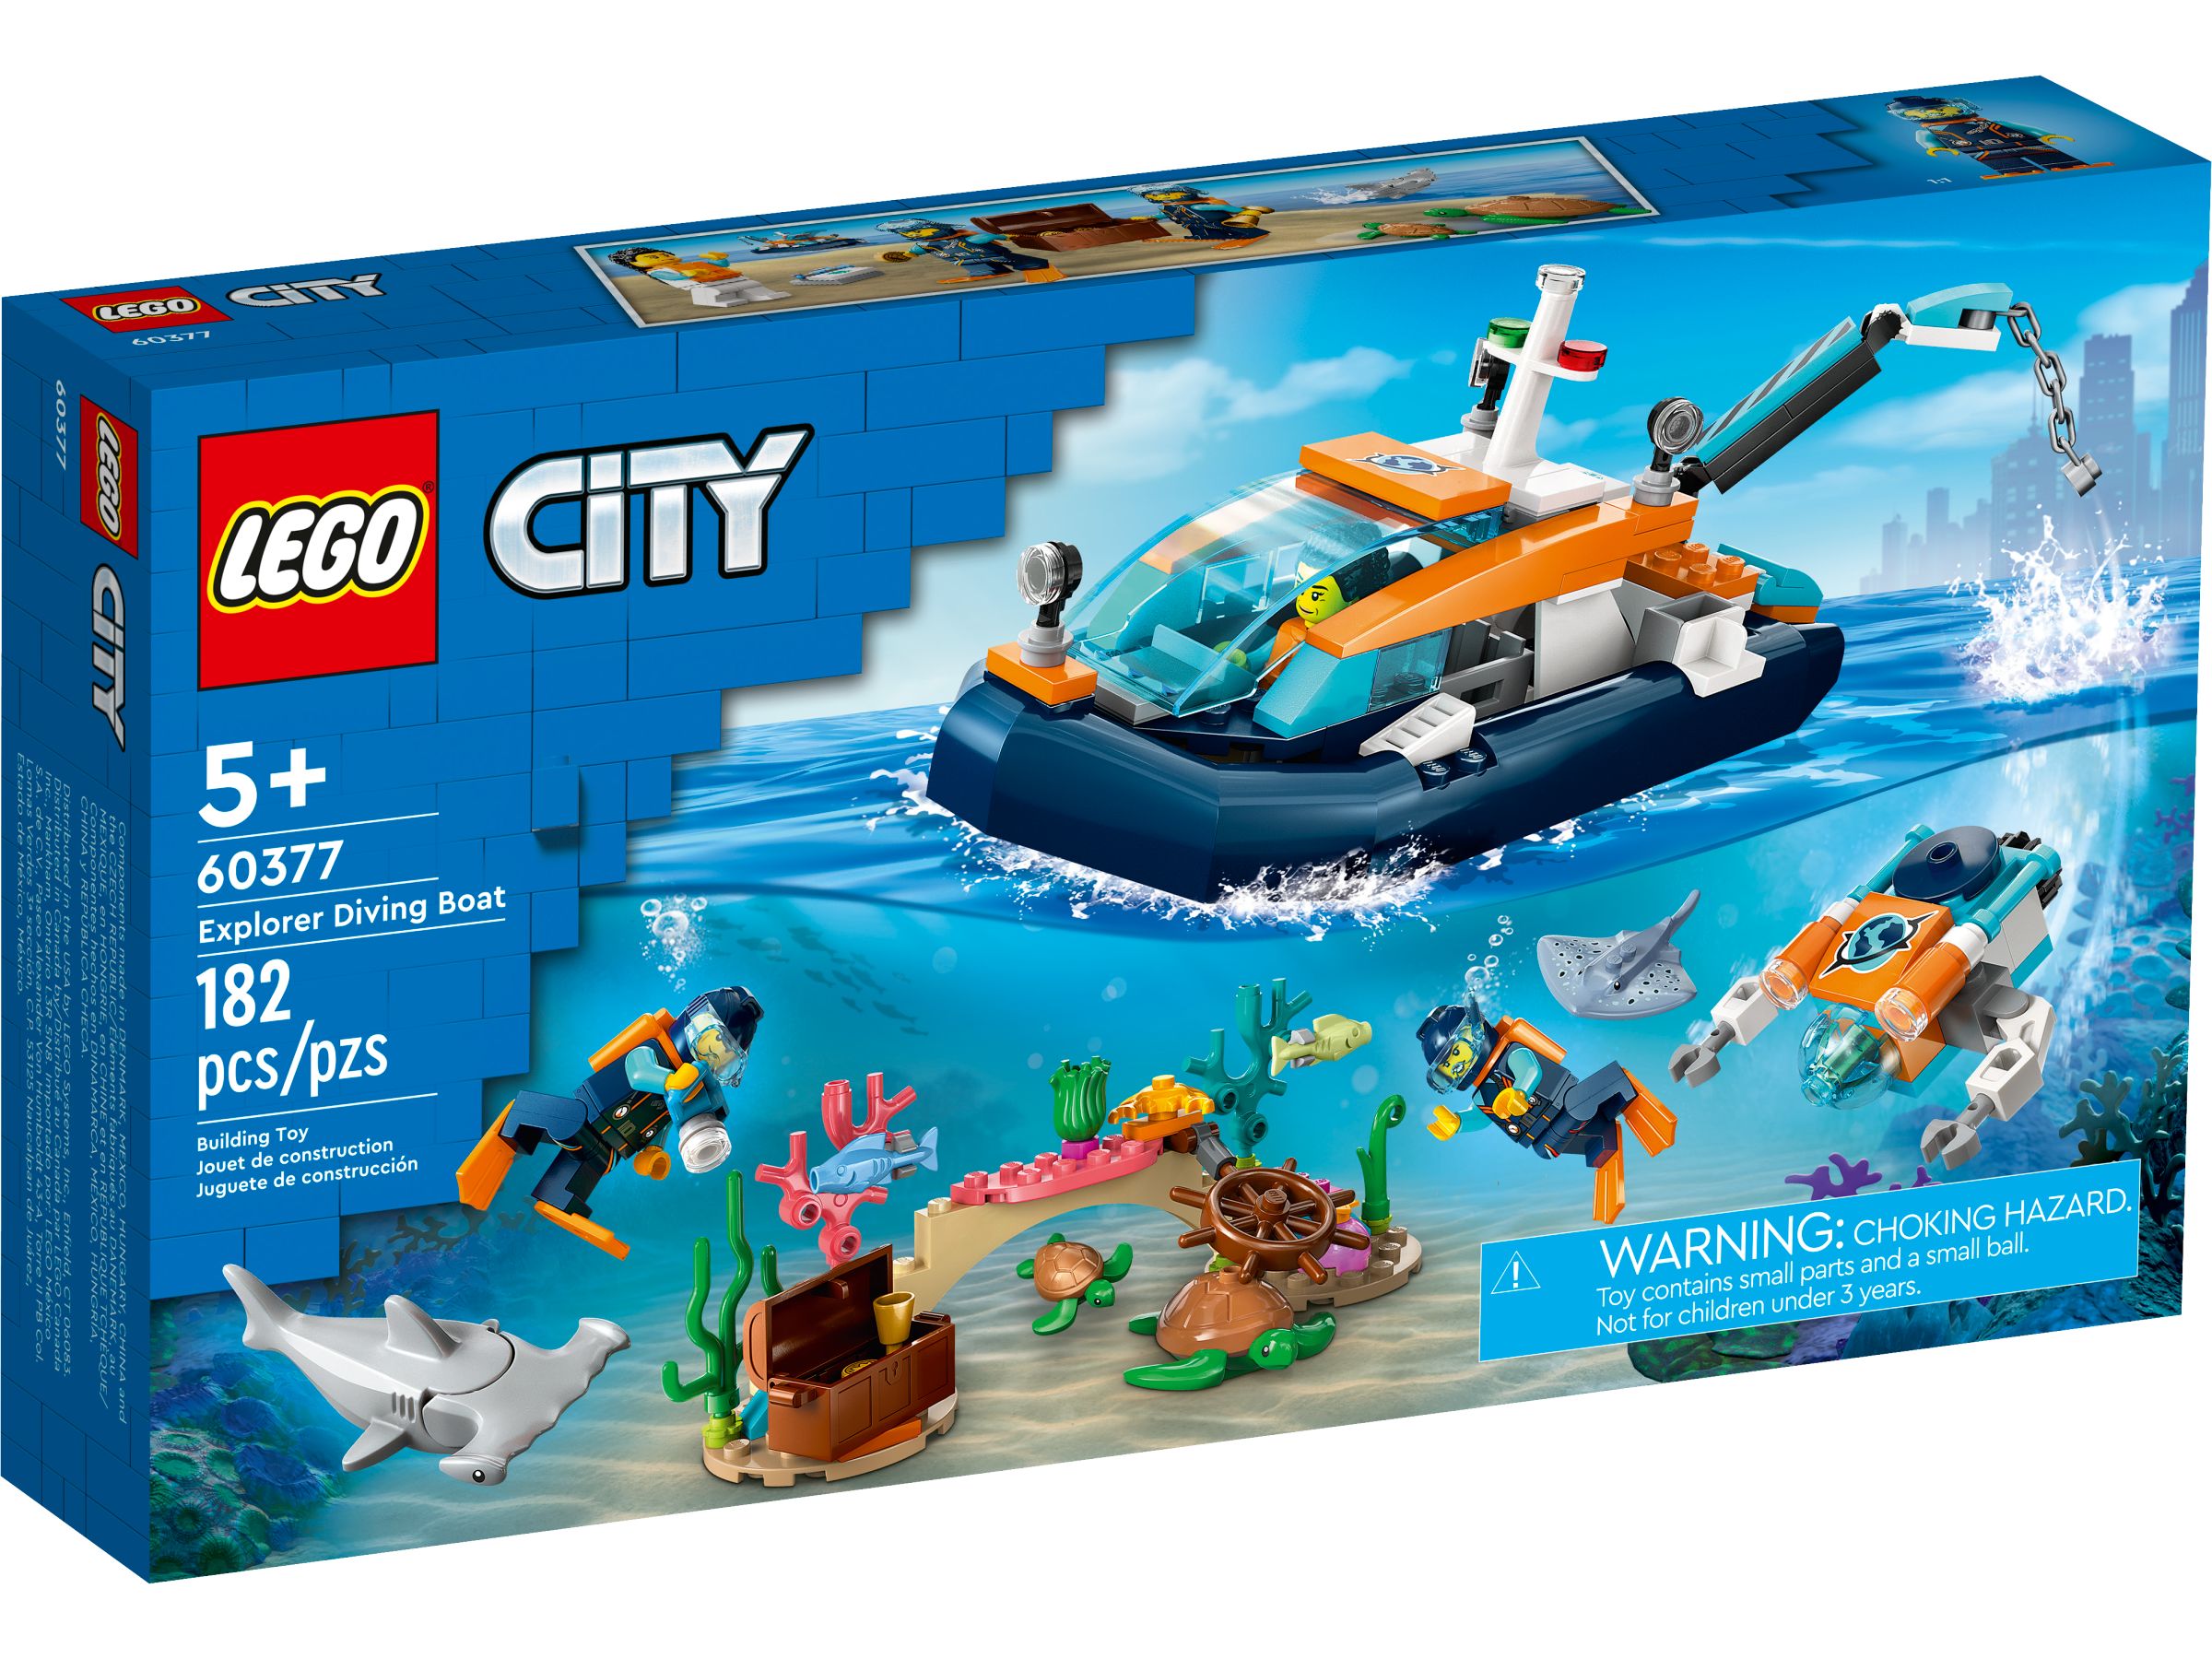 LEGO City 60377 Meeresforscher-Boot LEGO_60377_Box1_v39.jpg